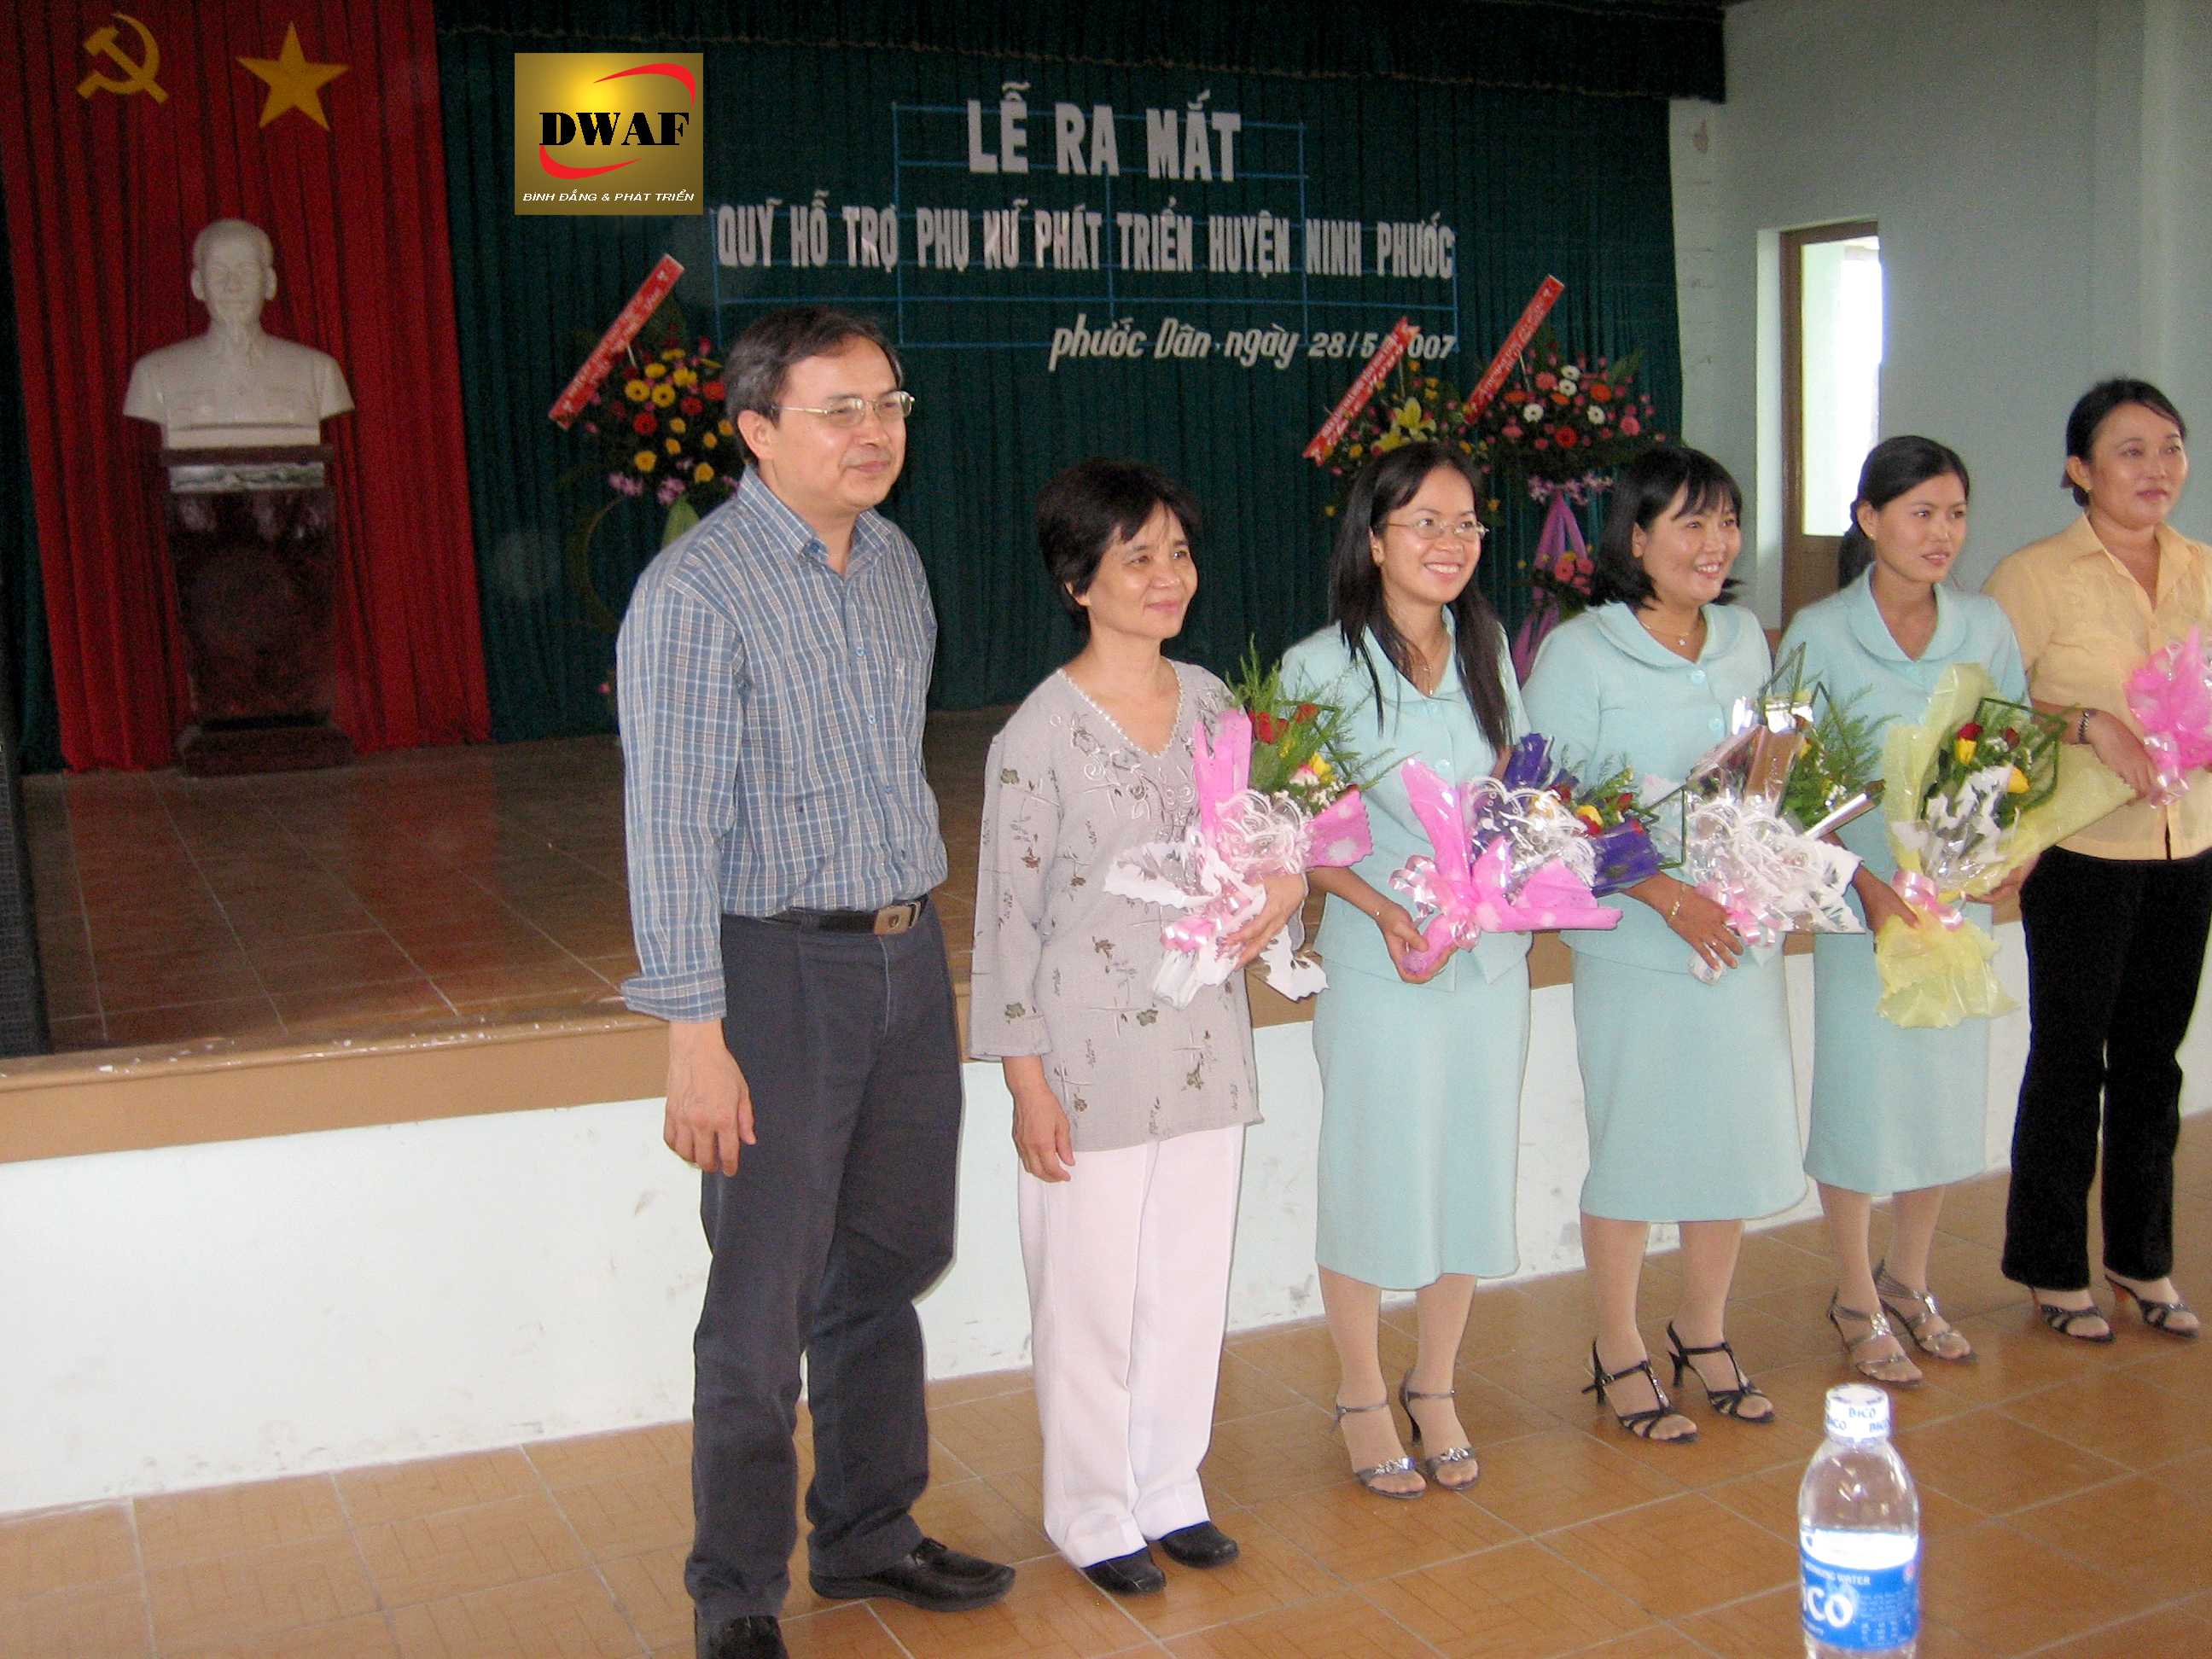 Quỹ hỗ trợ phụ nữ phát triển Ninh Phước